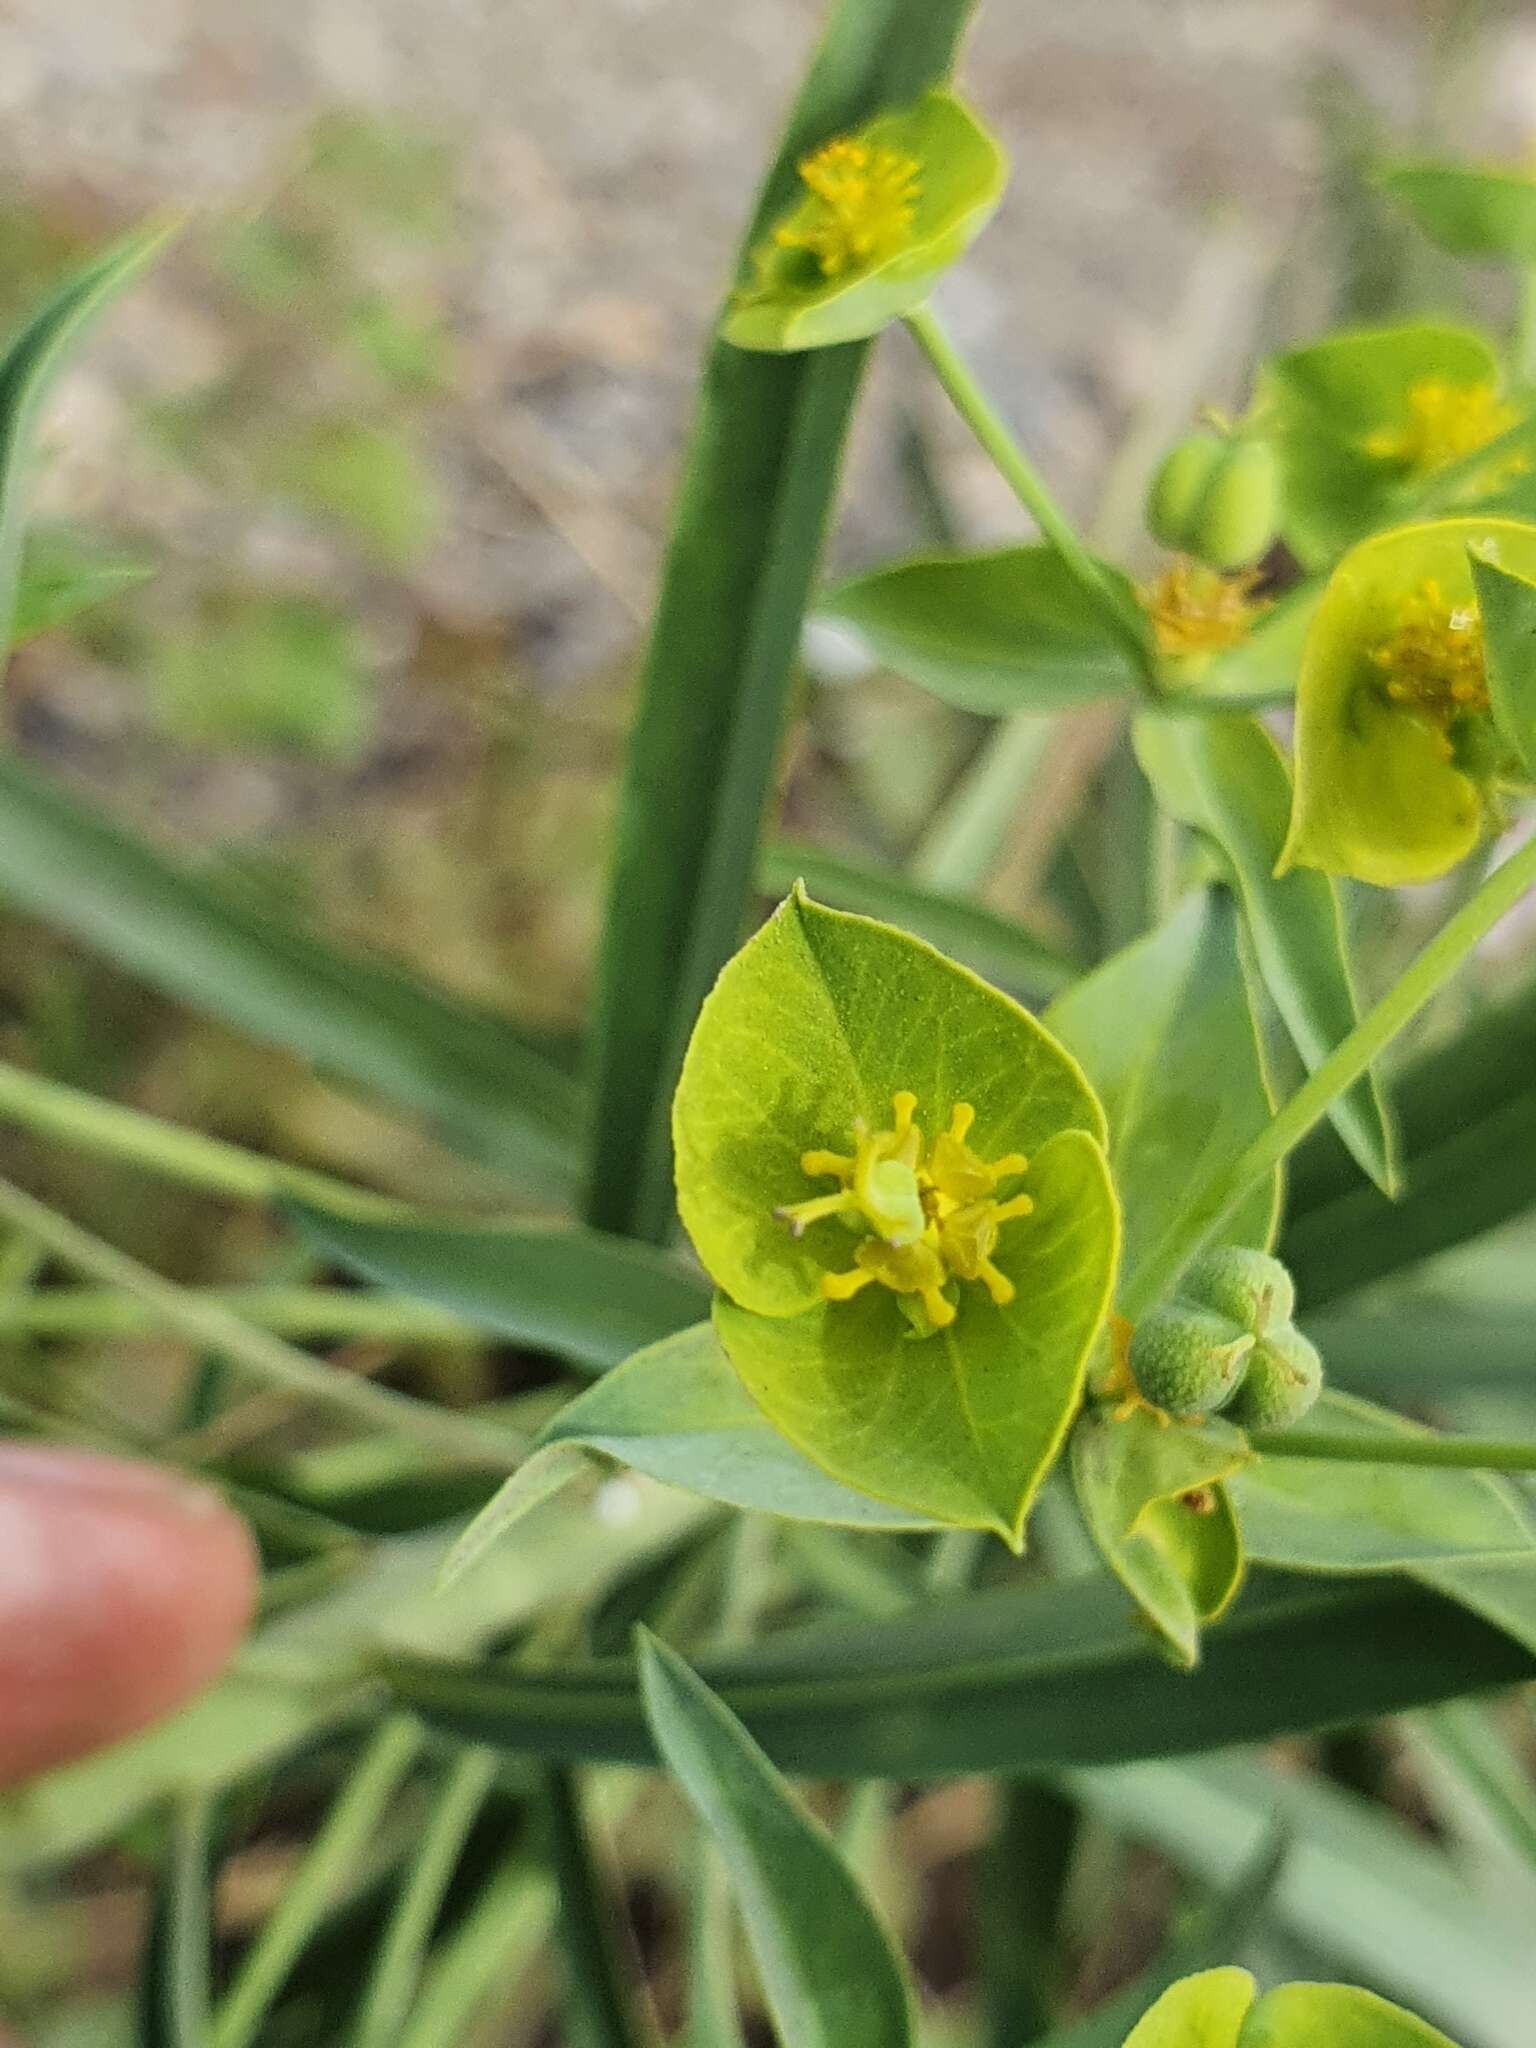 Image of Euphorbia biumbellata Poir.